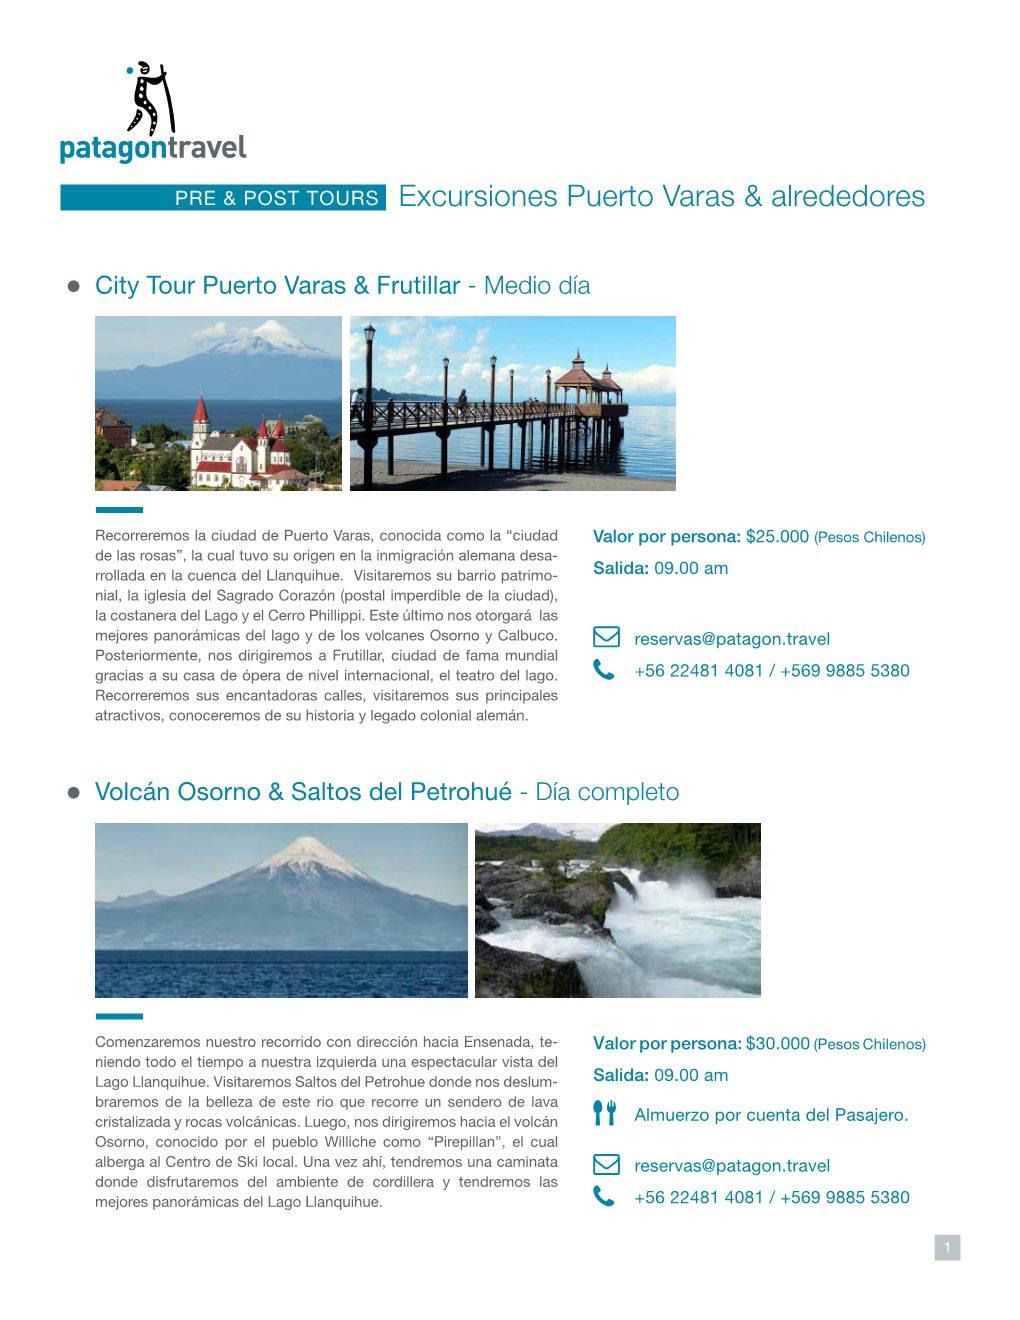 PRE & POST TOURS Excursiones Puerto Varas & Alrededores